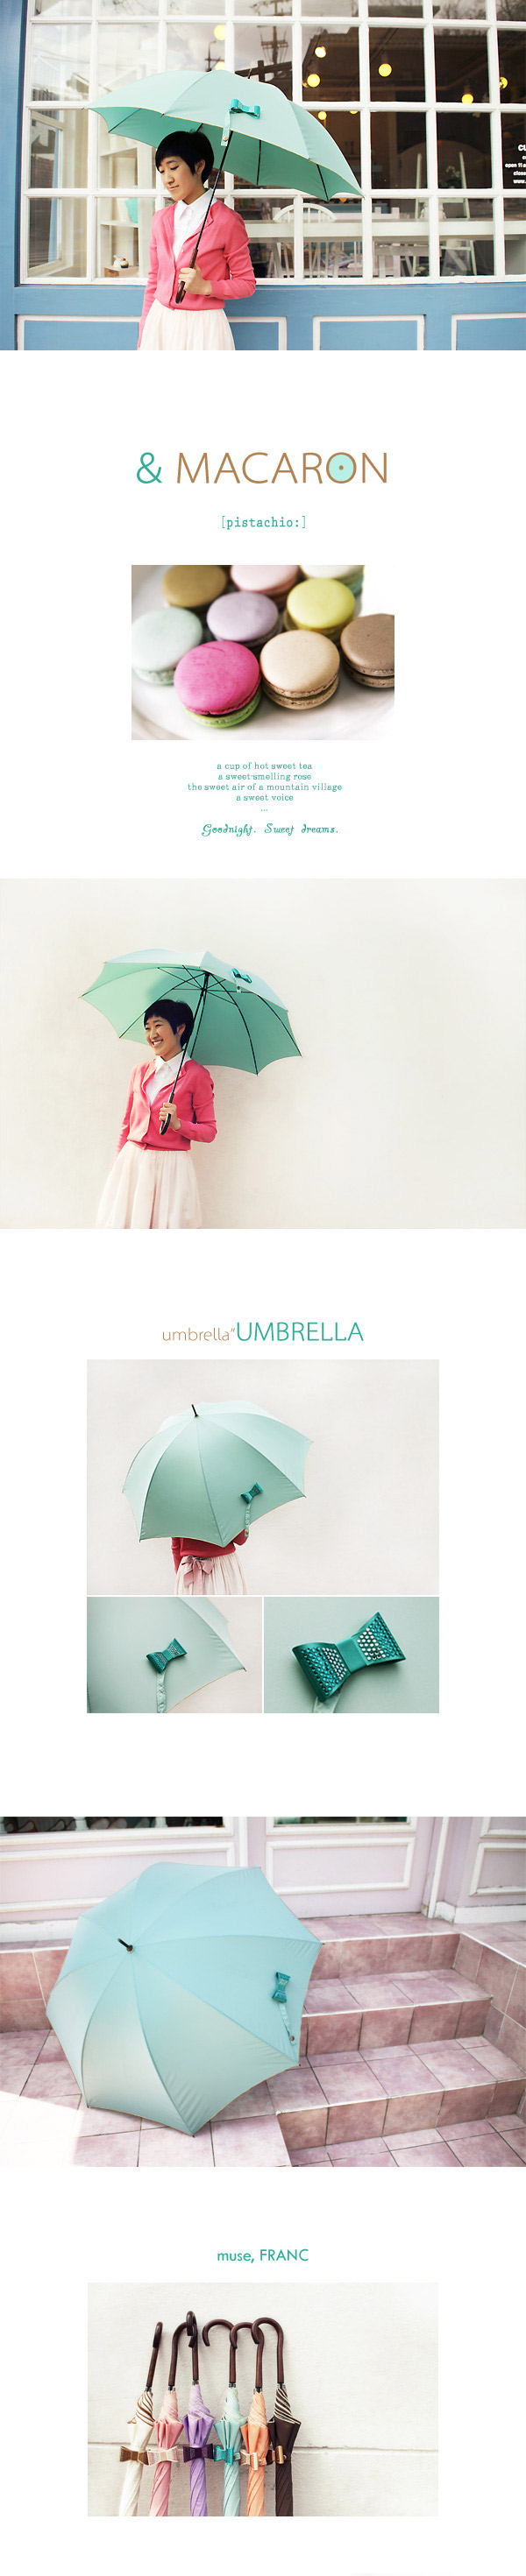 雨伞 薄荷色